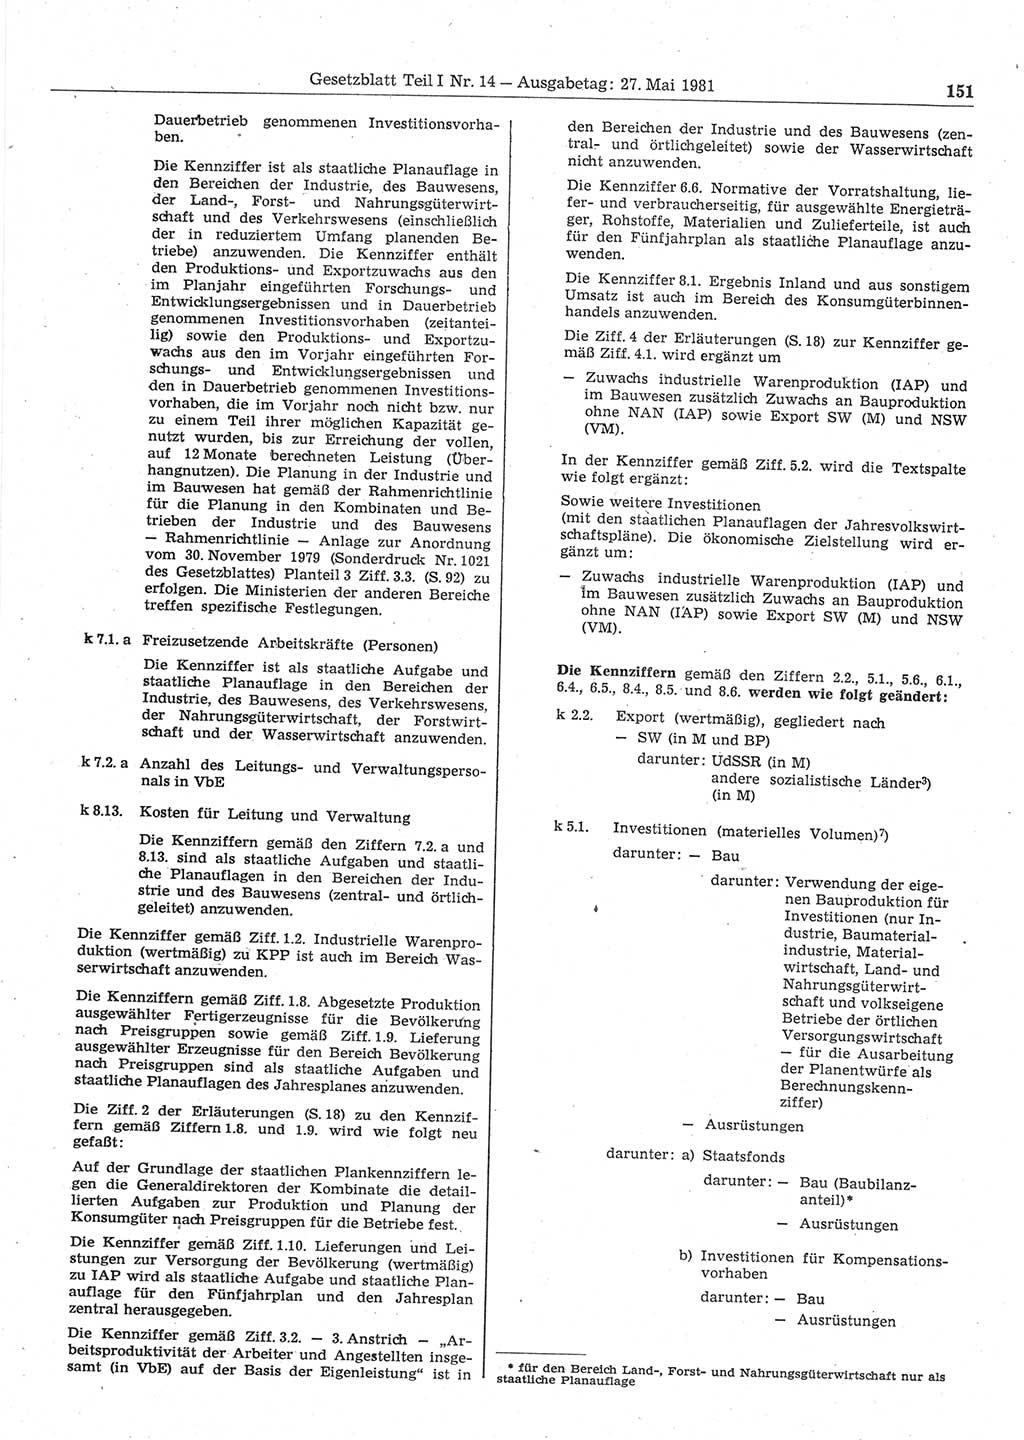 Gesetzblatt (GBl.) der Deutschen Demokratischen Republik (DDR) Teil Ⅰ 1981, Seite 151 (GBl. DDR Ⅰ 1981, S. 151)